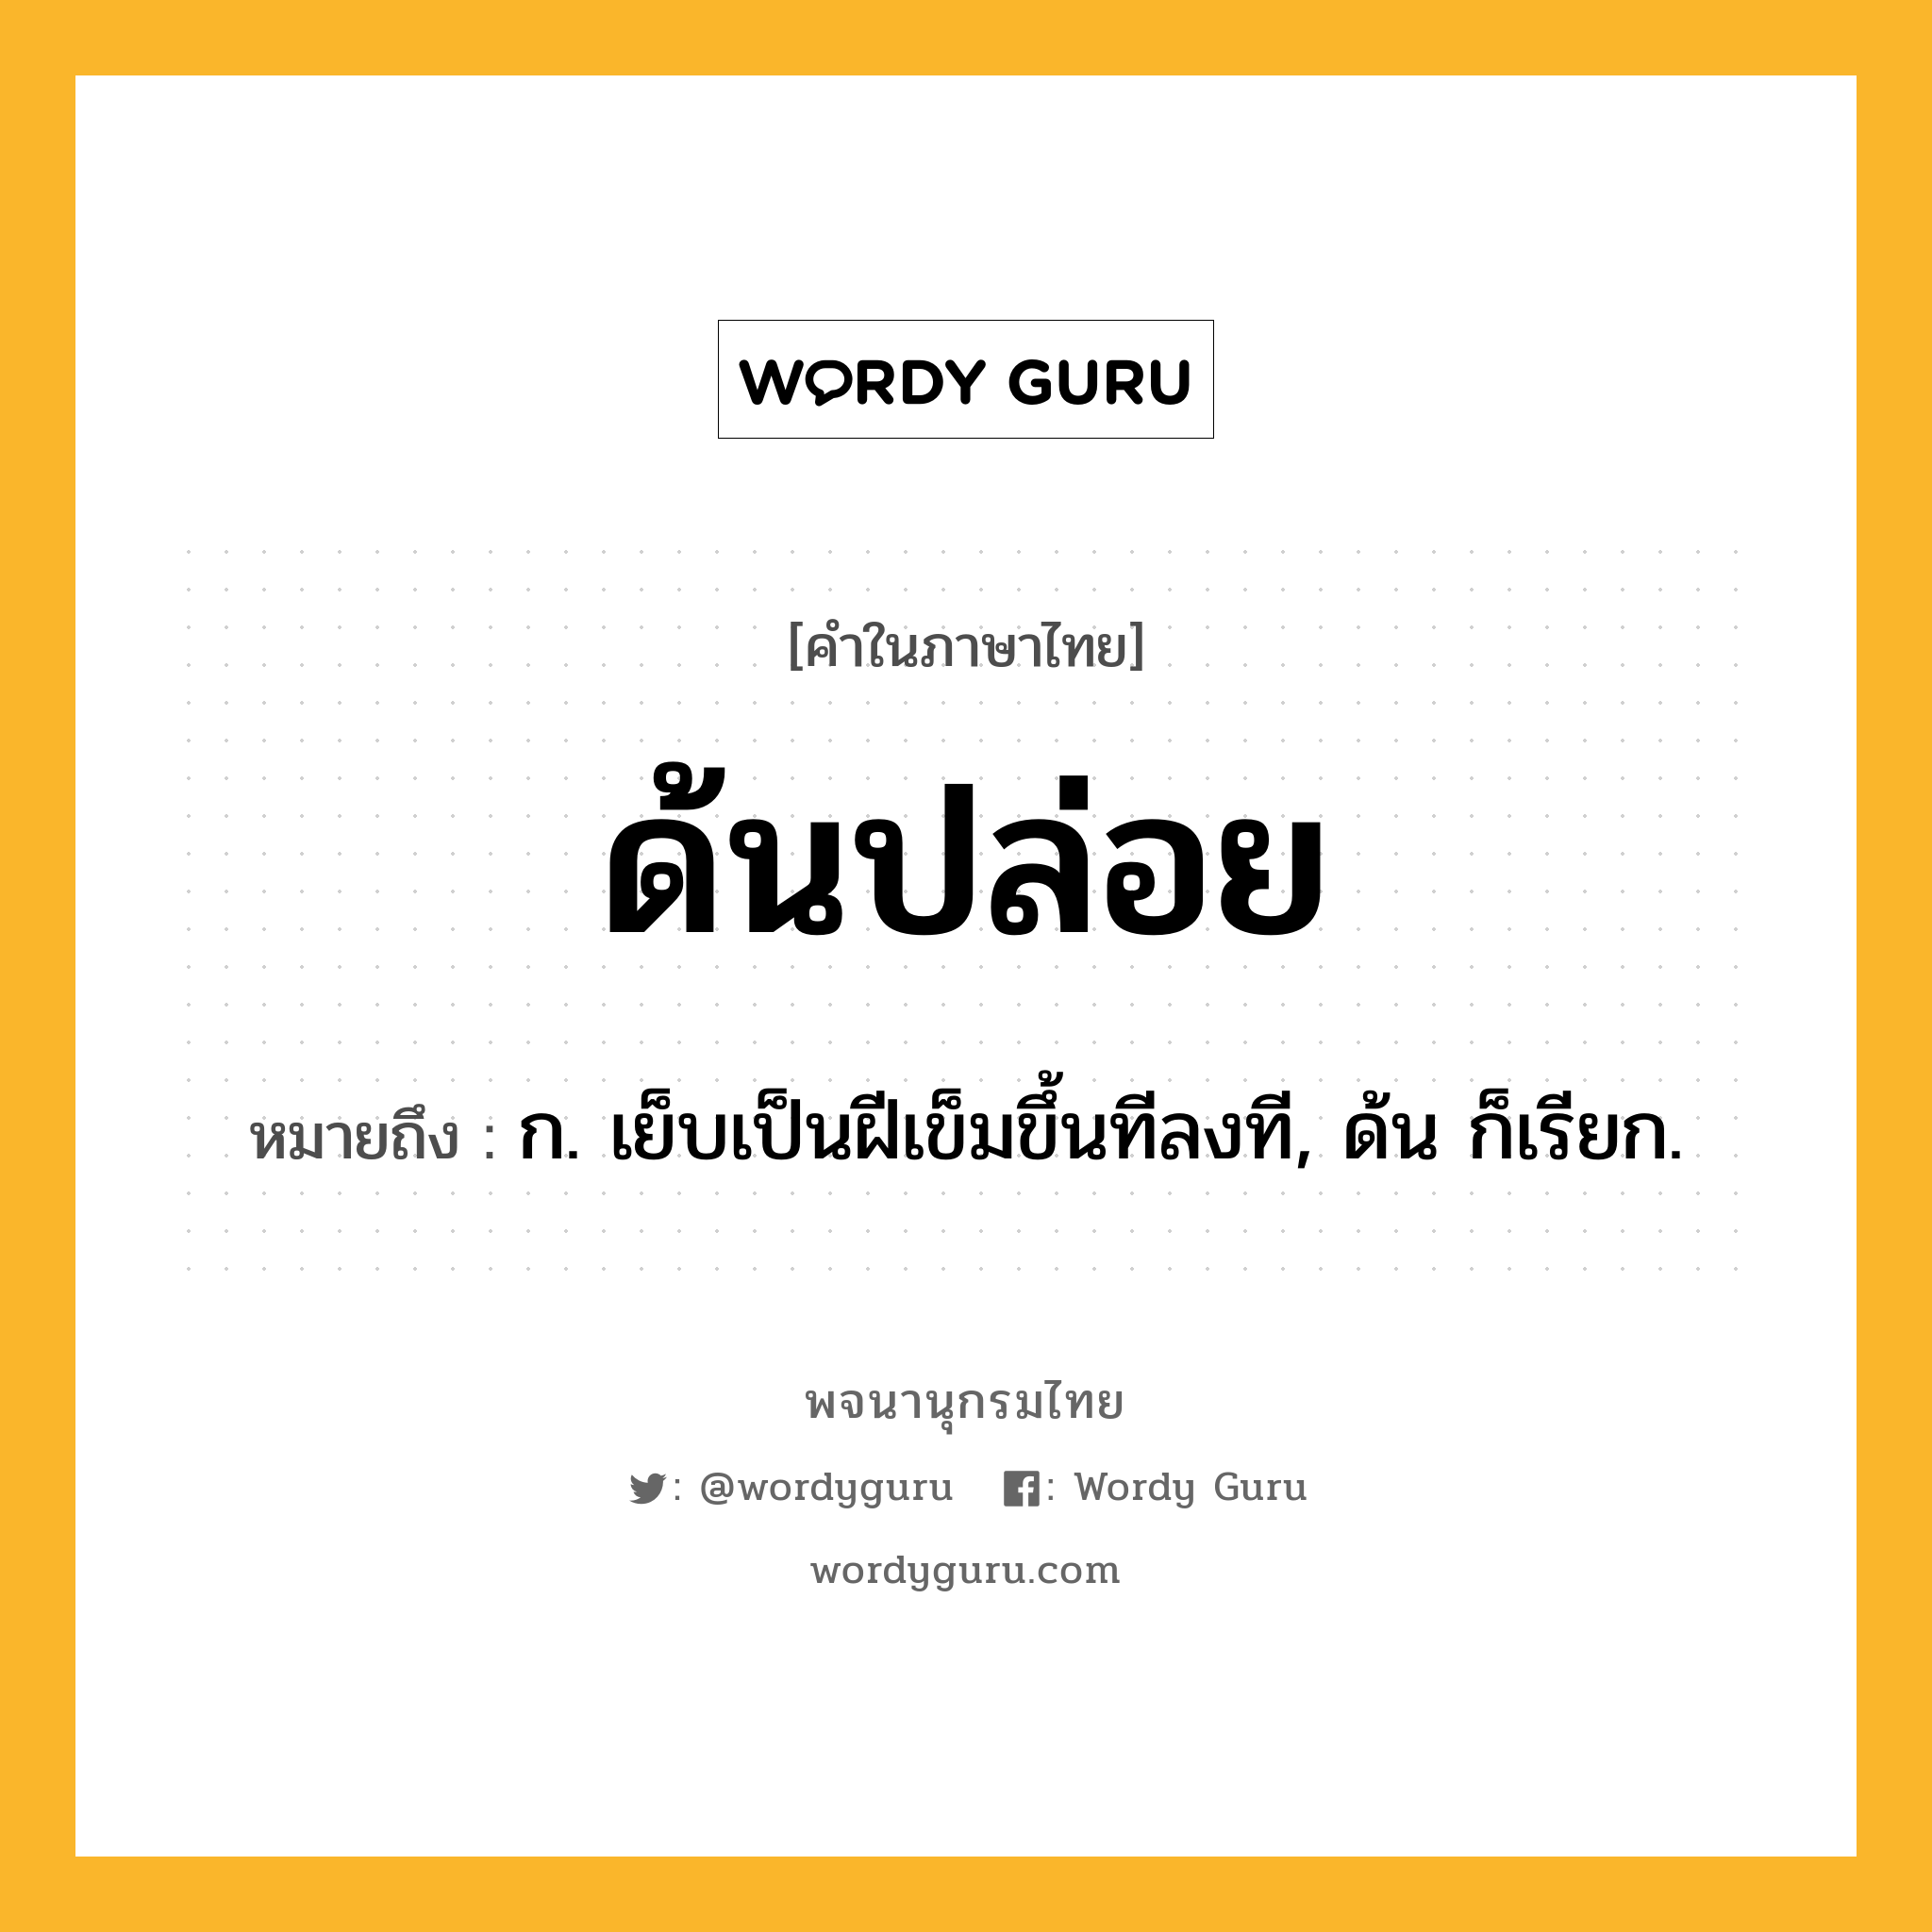 ด้นปล่อย ความหมาย หมายถึงอะไร?, คำในภาษาไทย ด้นปล่อย หมายถึง ก. เย็บเป็นฝีเข็มขึ้นทีลงที, ด้น ก็เรียก.